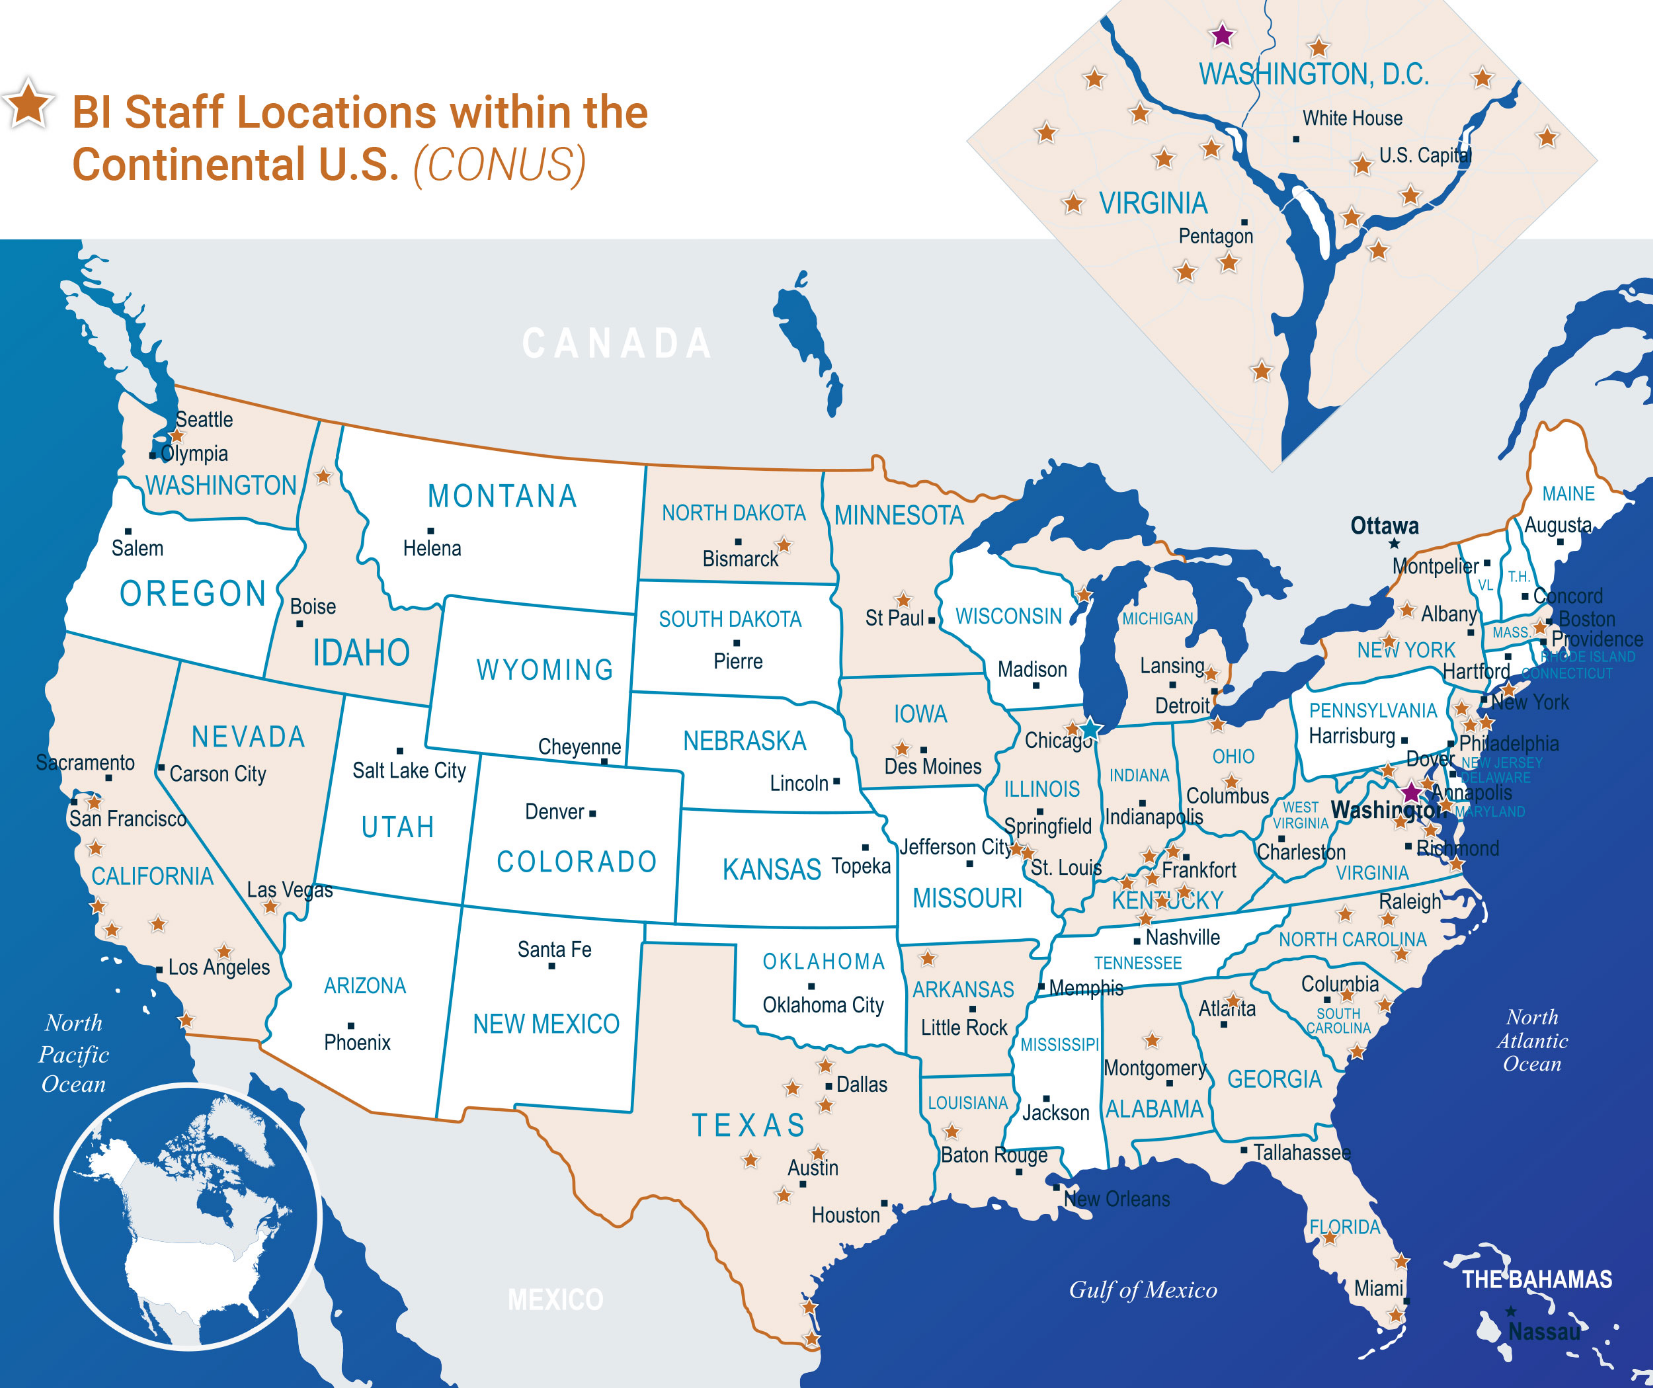 BI Staff Locations Map